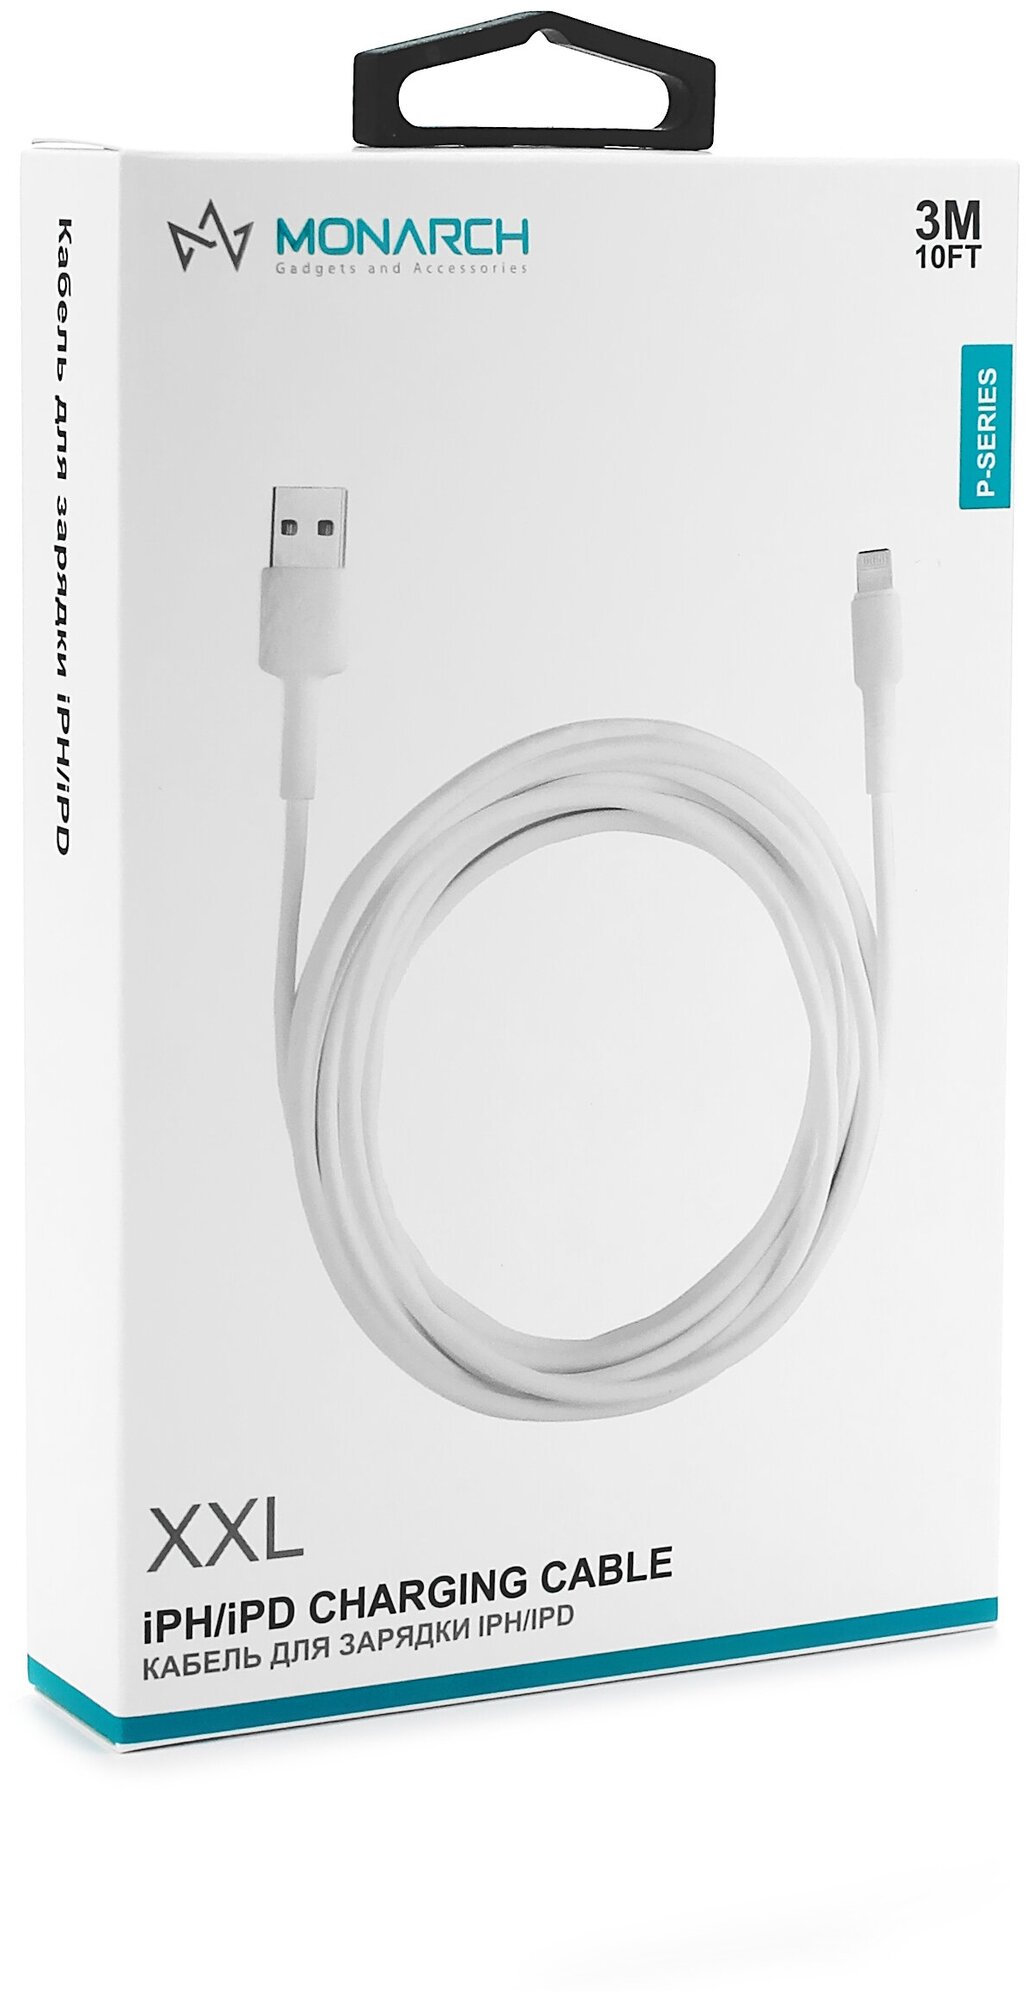 Кабель USB - lightning для зарядки iPhone, iPad, AirPods, iPod 3 метра, P серия (белый)